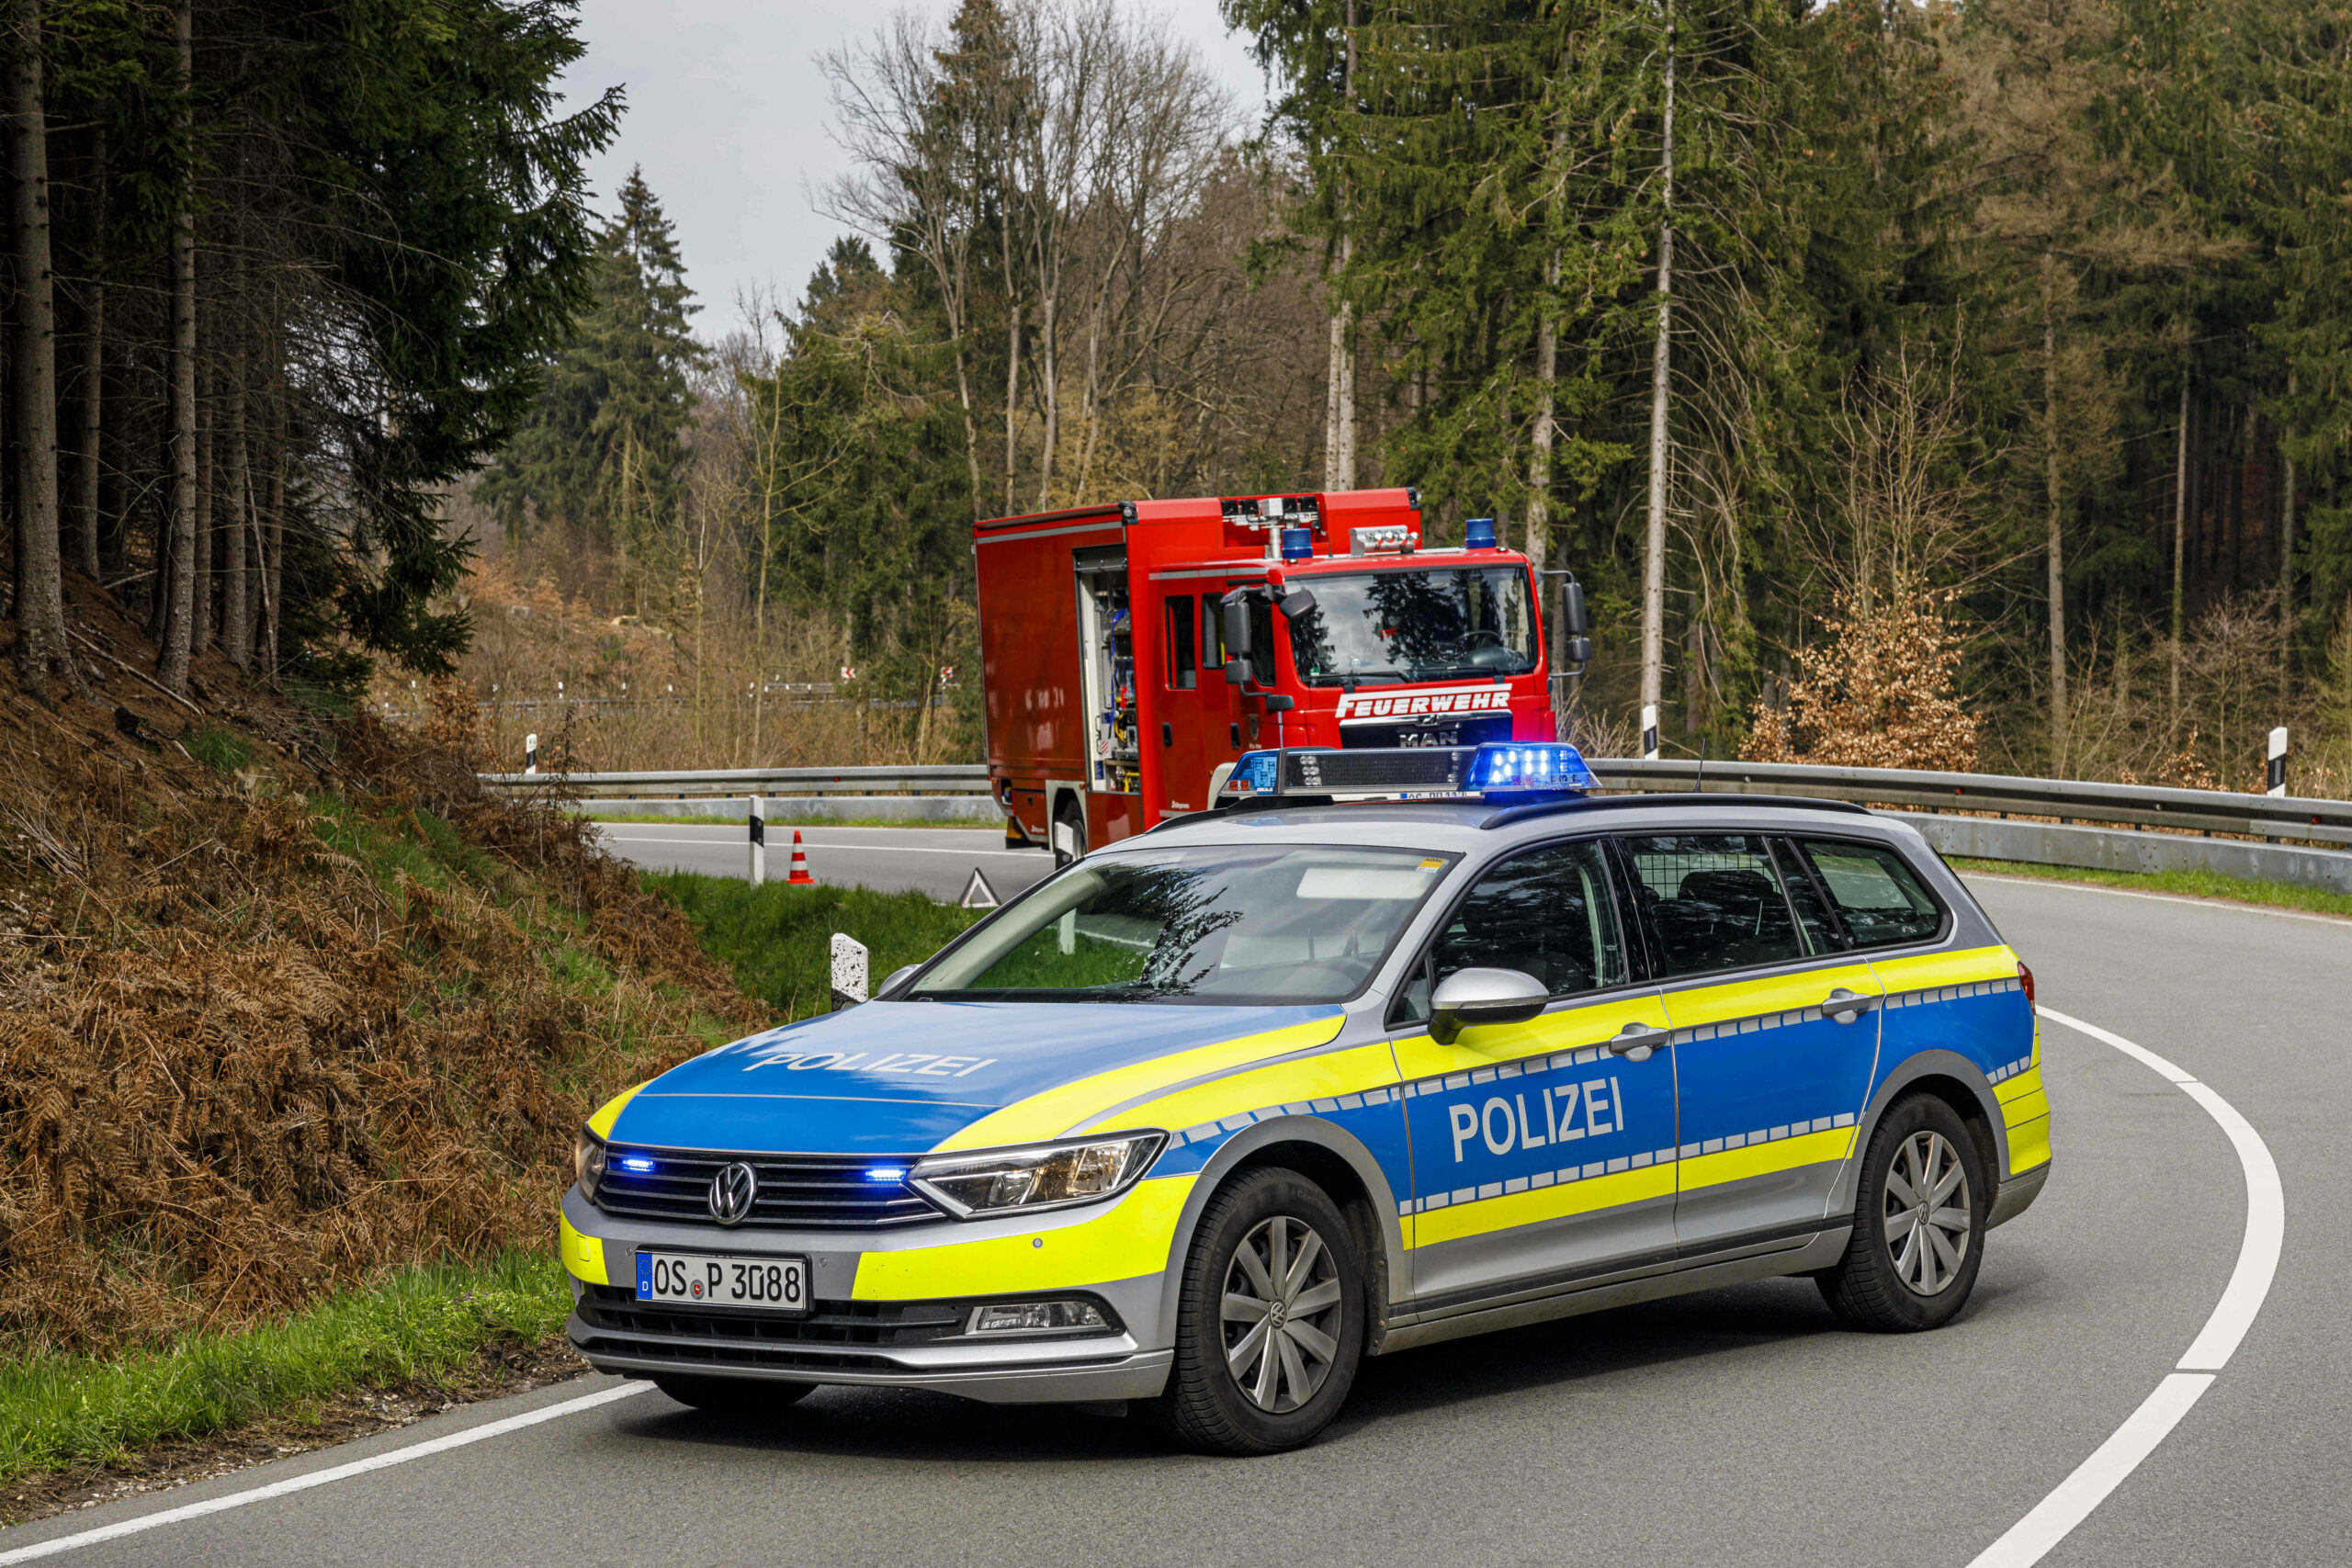 Einsatzfahrzeuge von Polizei und Feuerwehr stehen auf einer Straße in Niedersachsen. (Symbolbild)